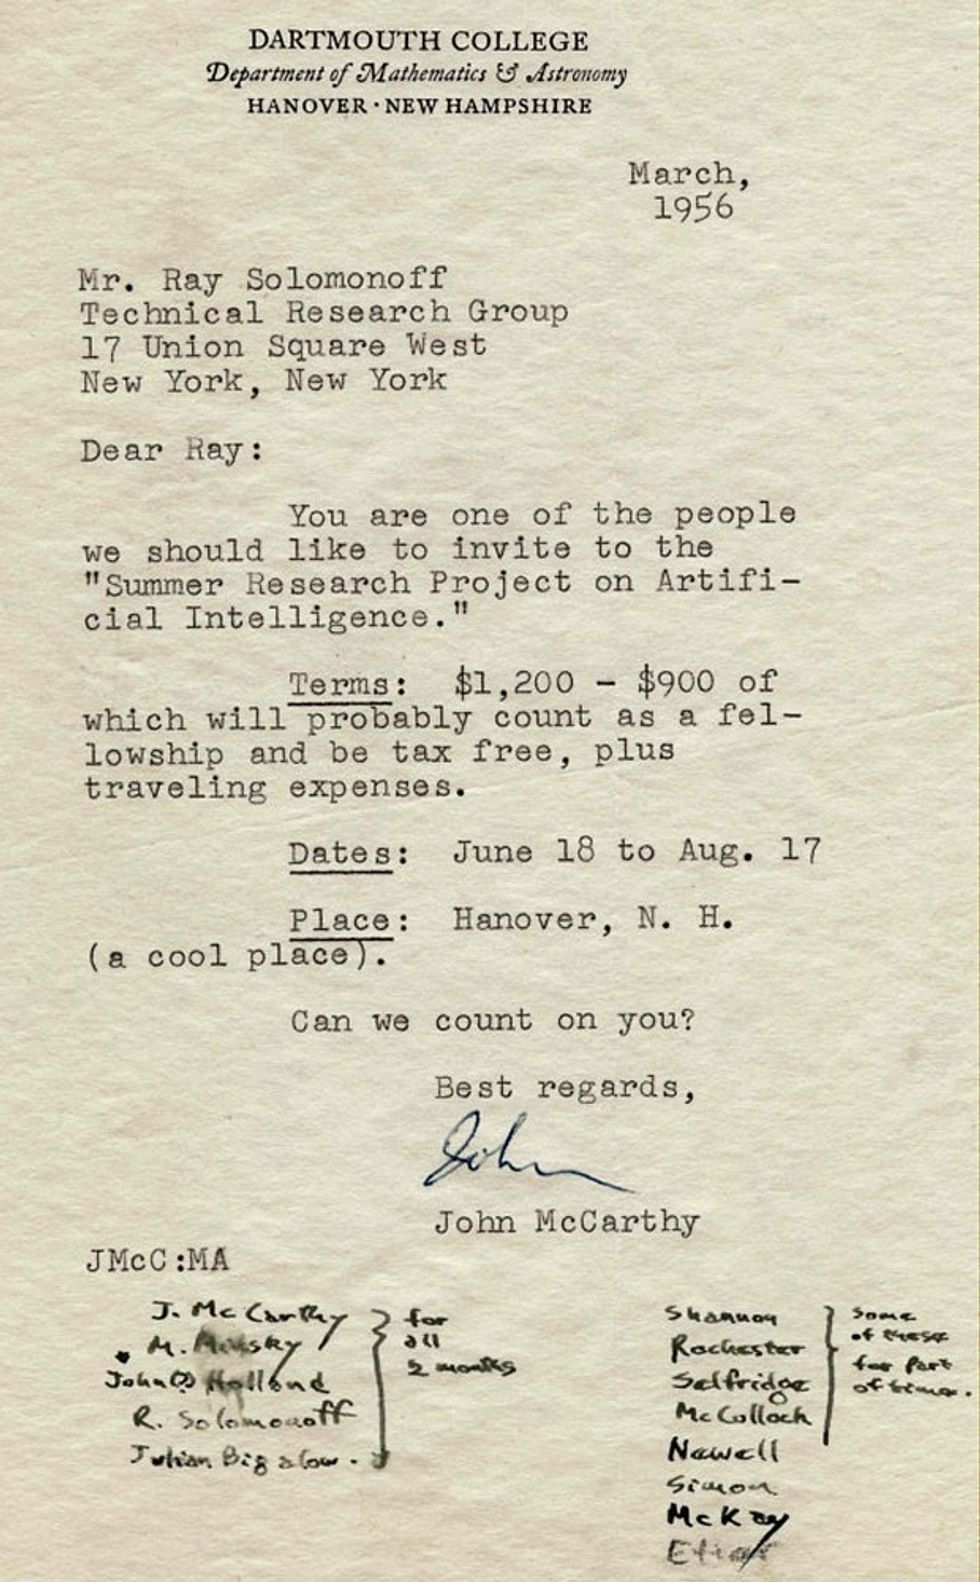 رسالة من جون مكارثي إلى راي سولومونوف على قرطاسية كلية دارتموث.